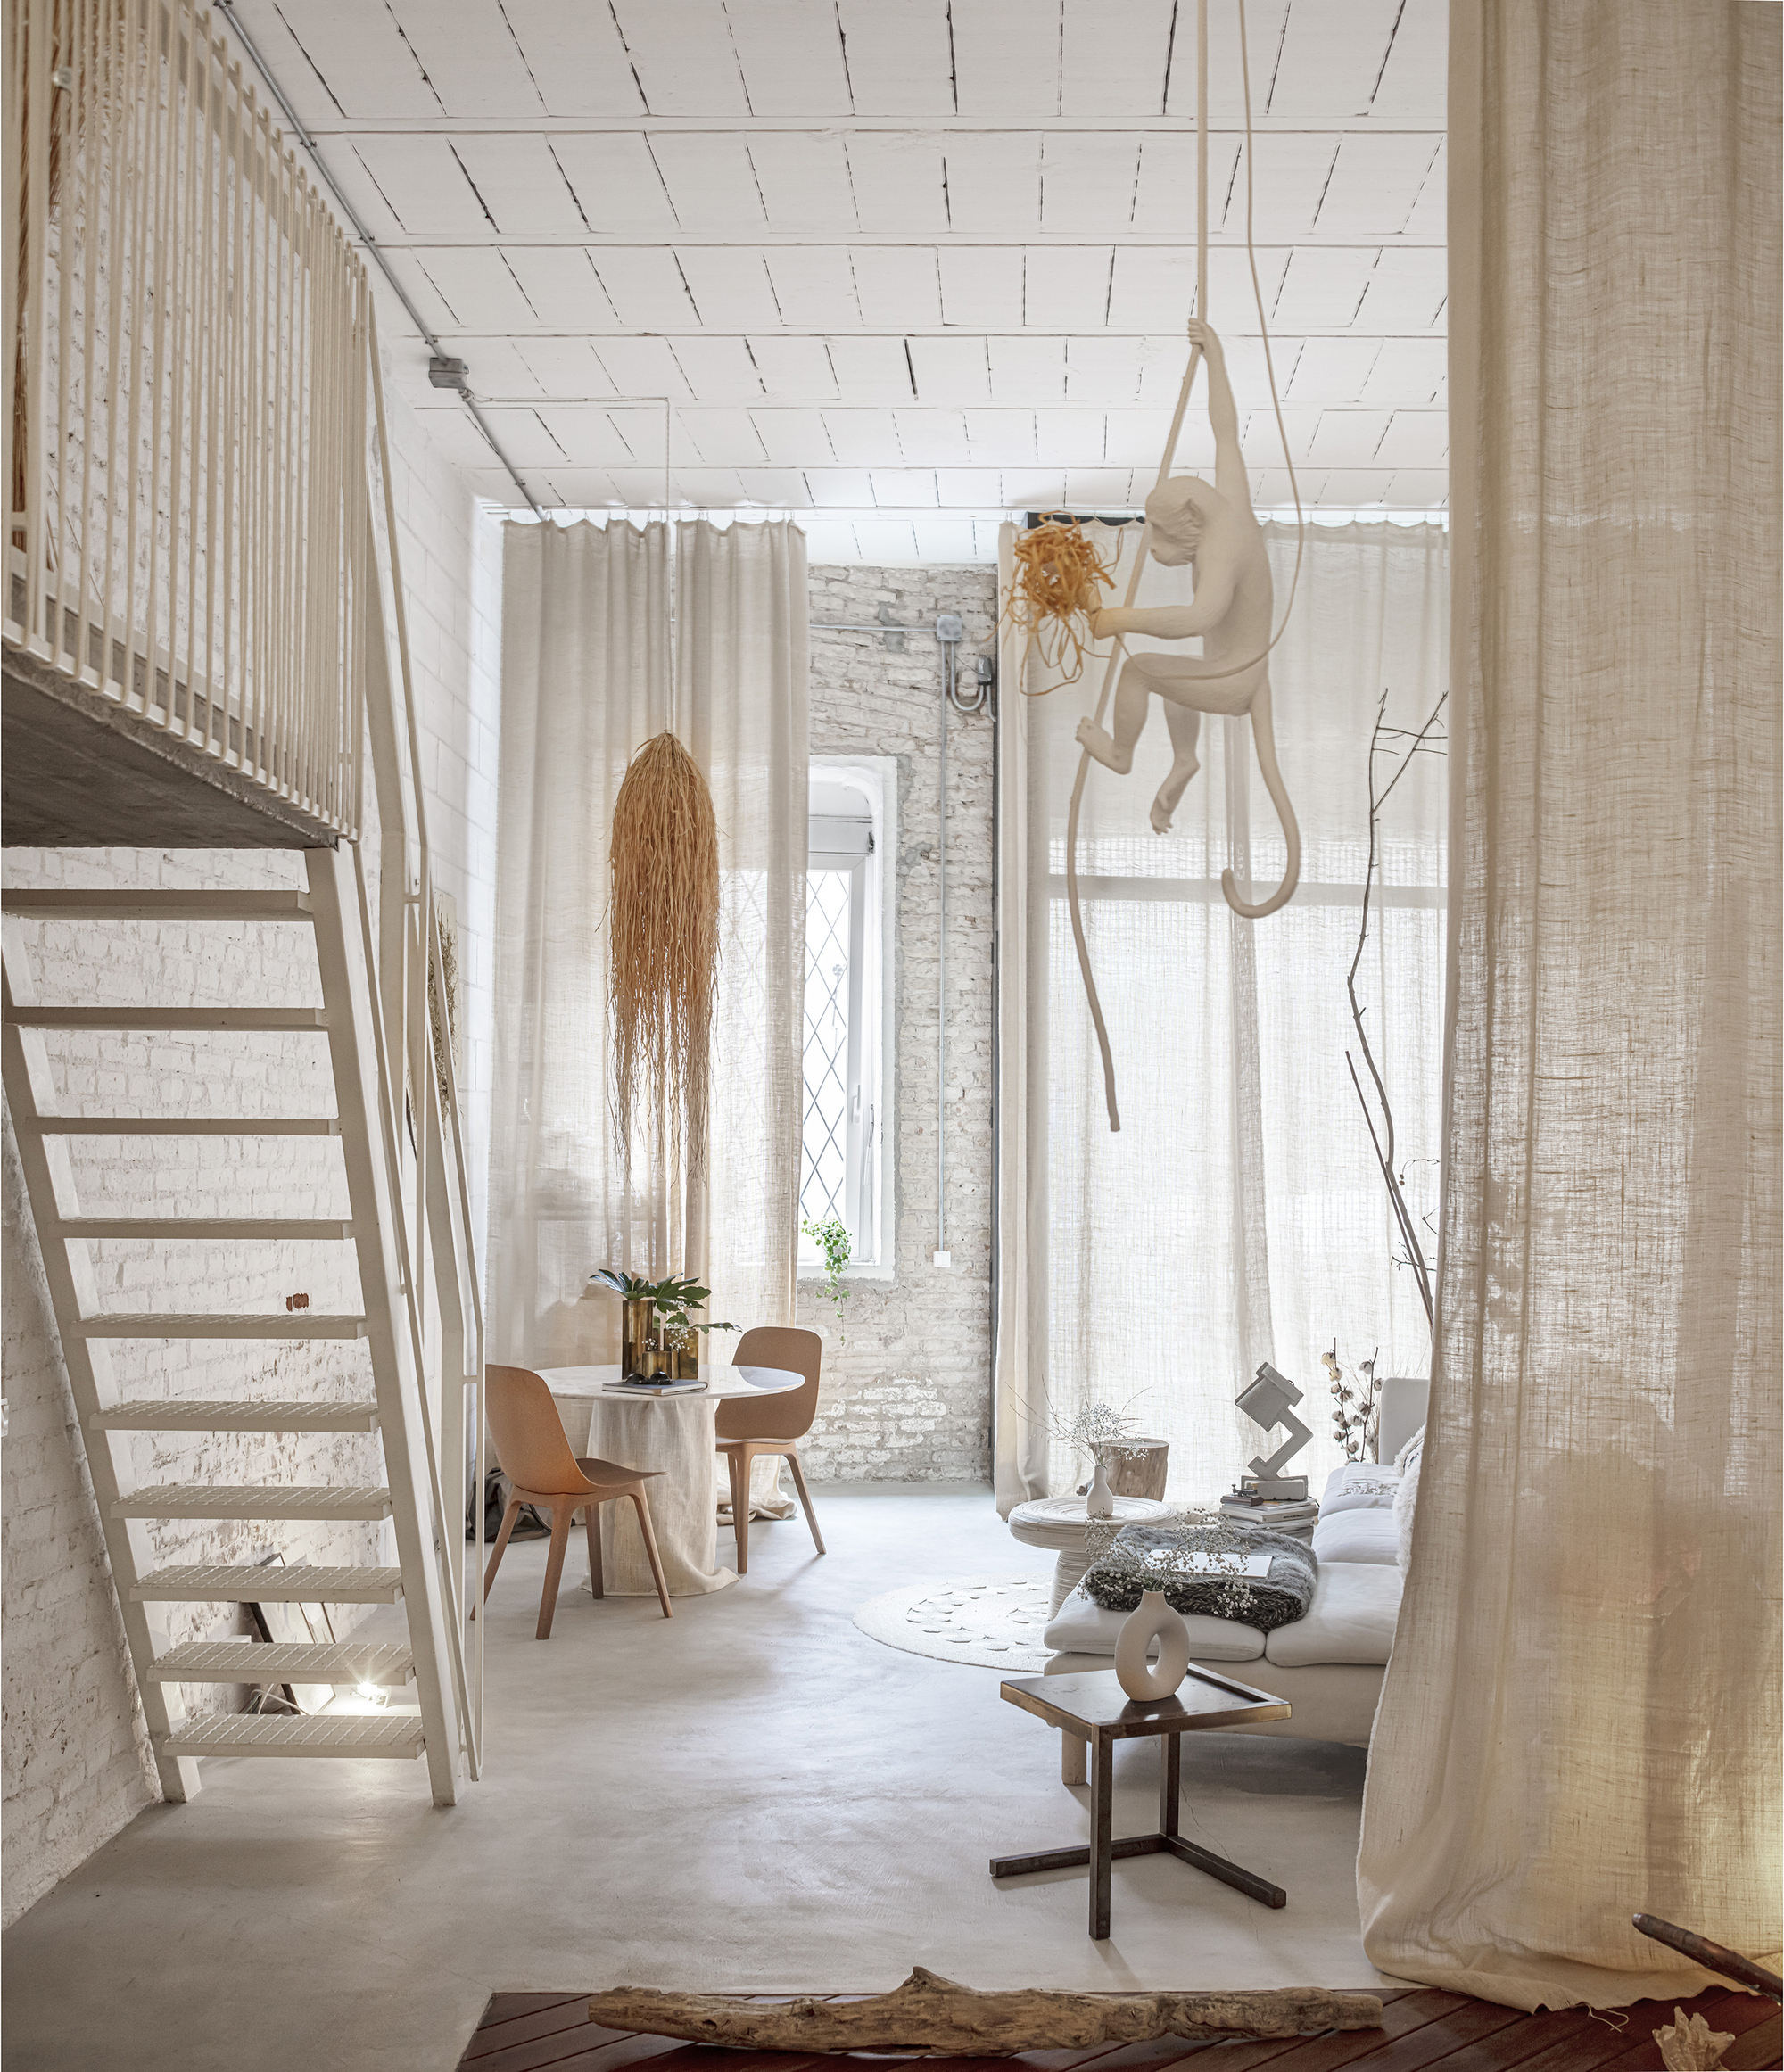 LoVt3 公寓 / NáBITO Architects|ART-Arrakis | 建筑室内设计的创新与灵感